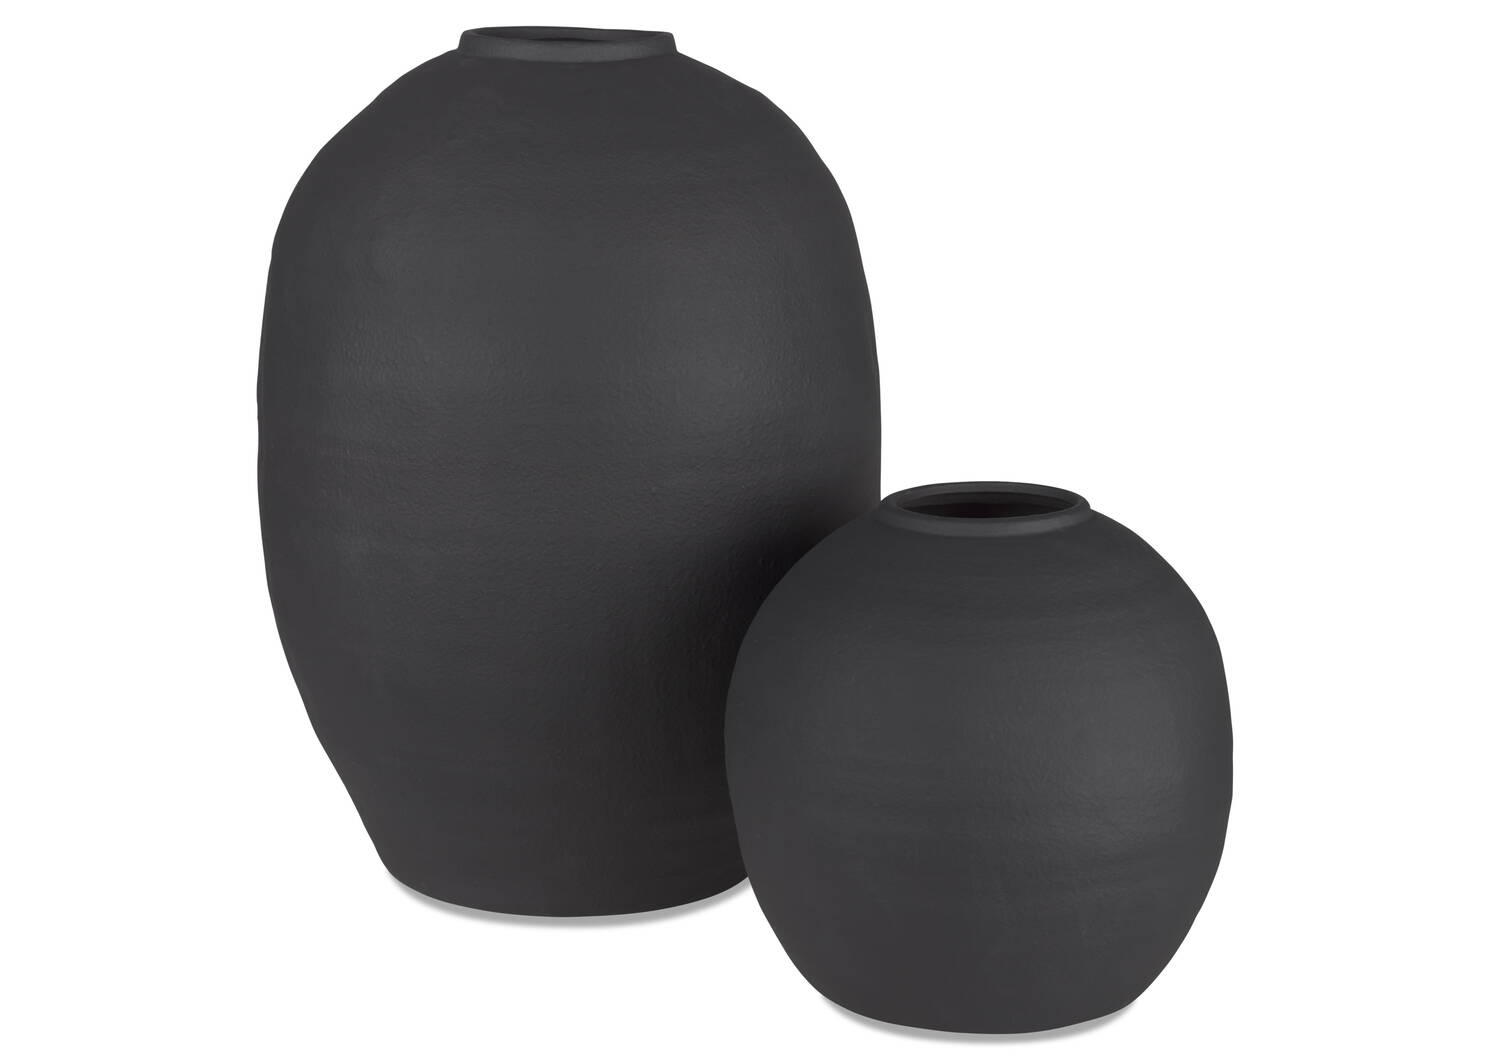 Daleyza Vase Large Black